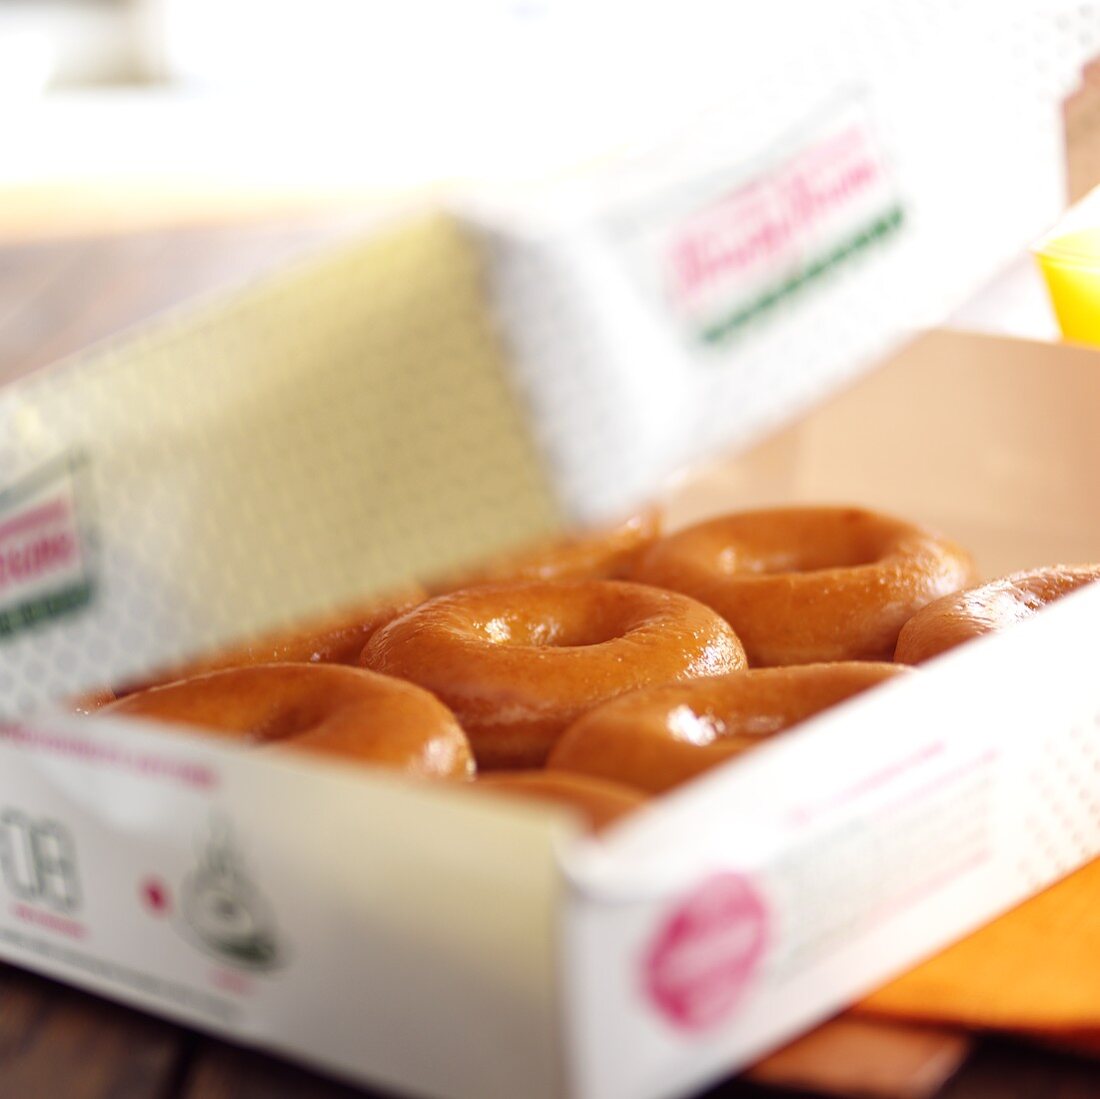 Doughnuts in a cardboard box